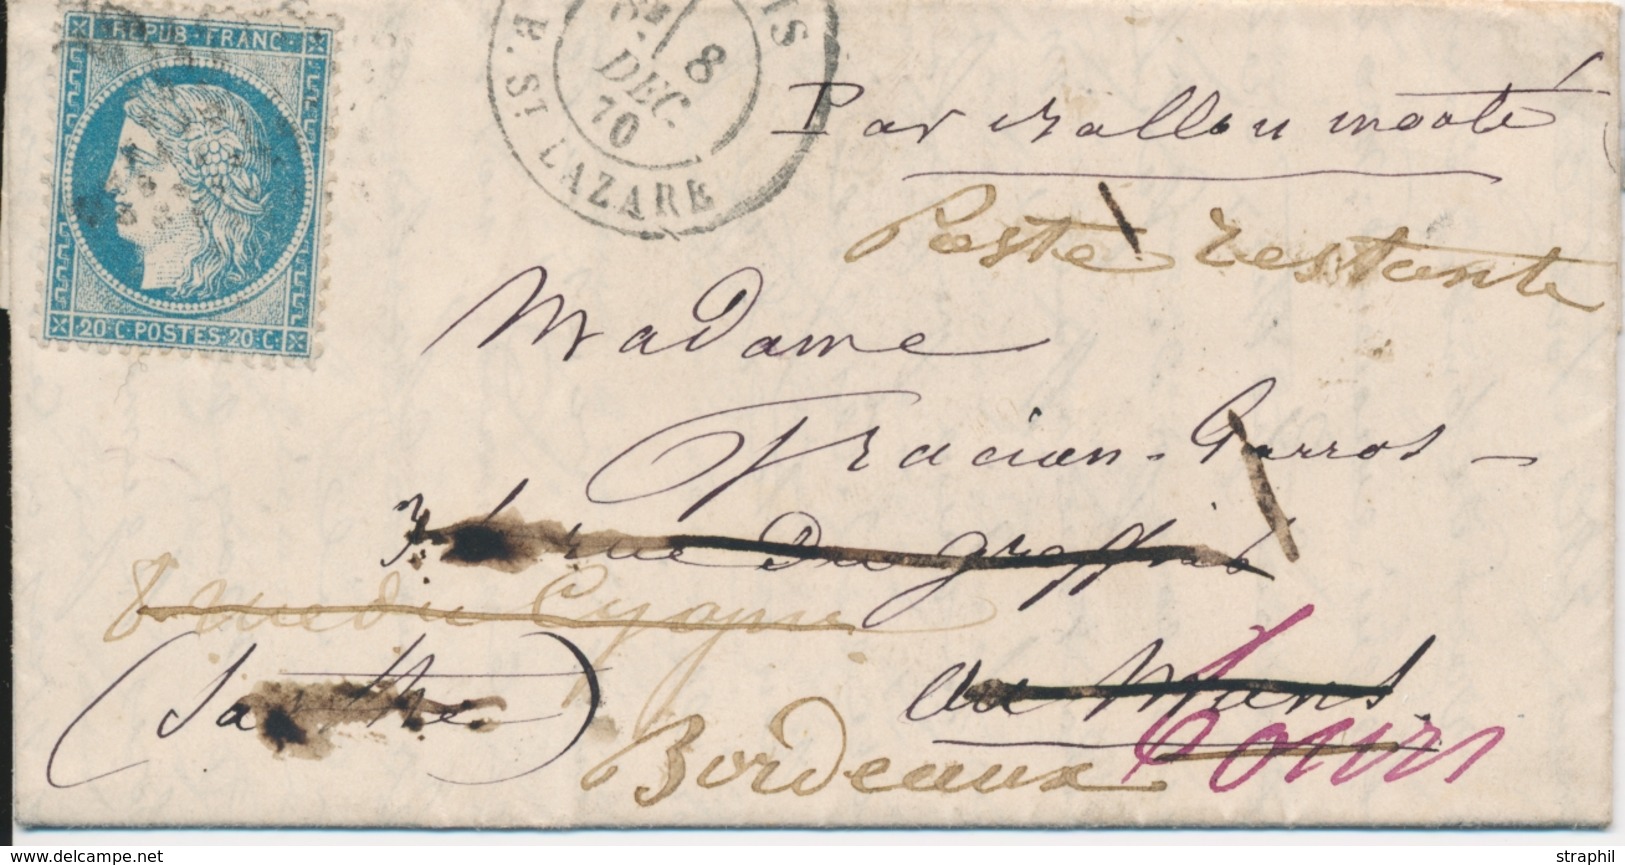 LAC BALLONS MONTES - LAC - Le GENERAL RENAULT - LMM Du 8.12.70 - Etoile 2 Sur N°37 - CaD Rare St Lazare - Arrivée LE MAN - War 1870